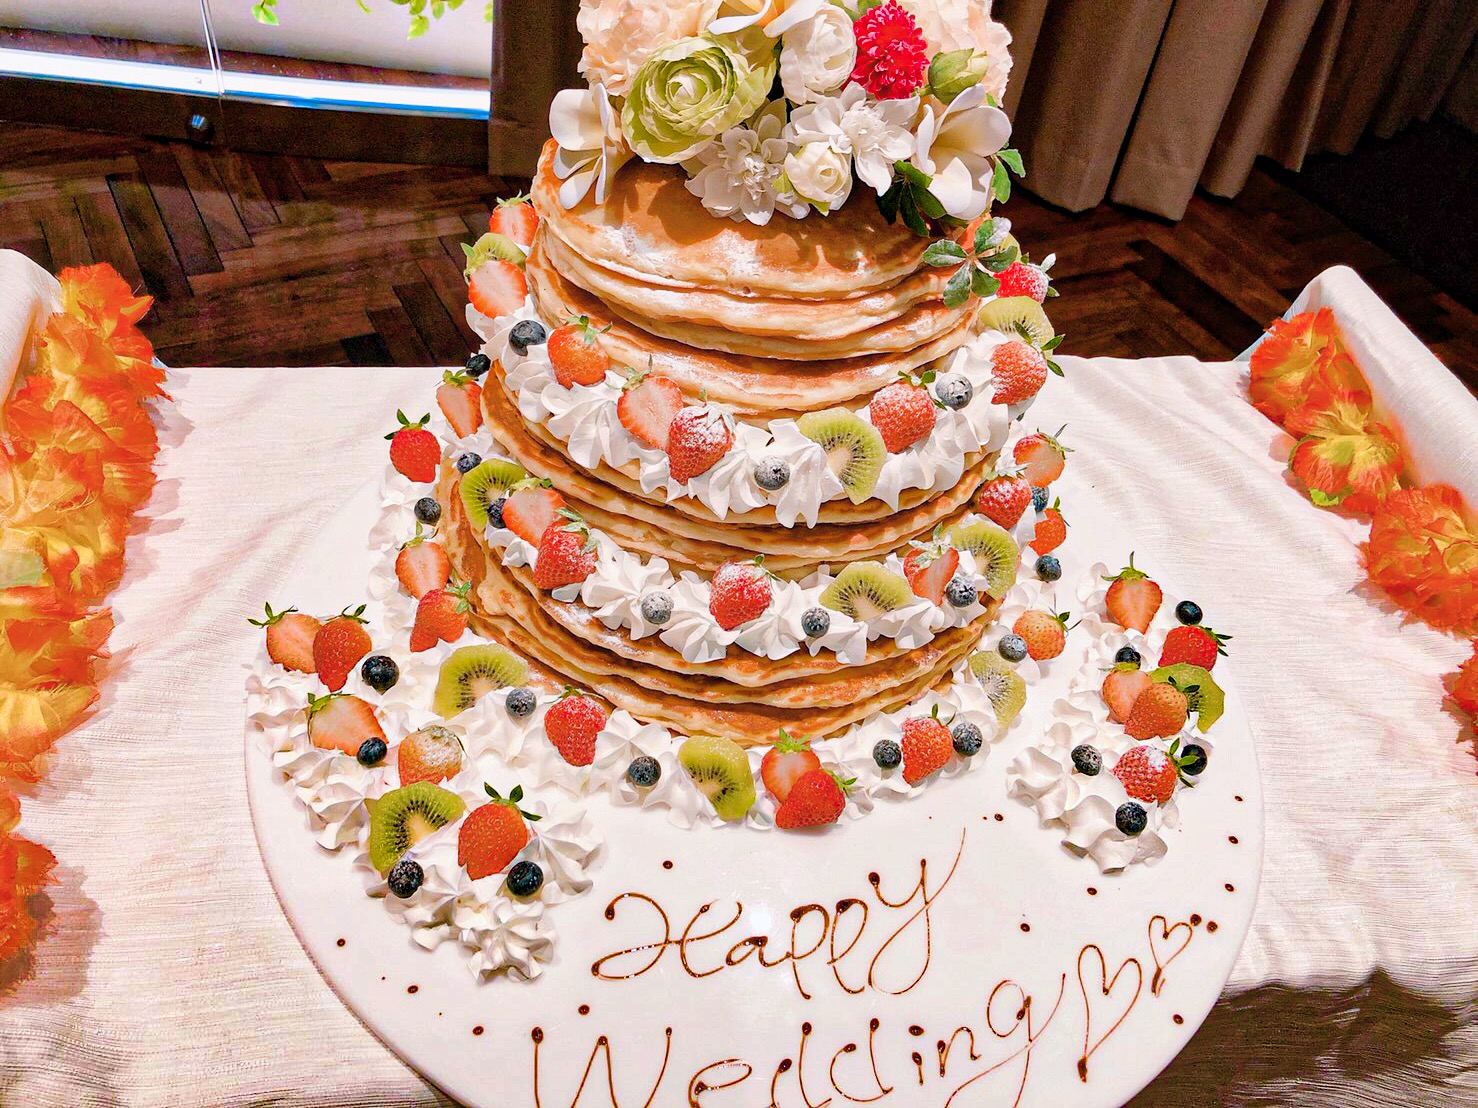 Wedding 焼きたてパンケーキが食べられるハワイグルメコンテスト金賞受賞のハワイアンカフェレストラン カフェ カイラ舞浜店